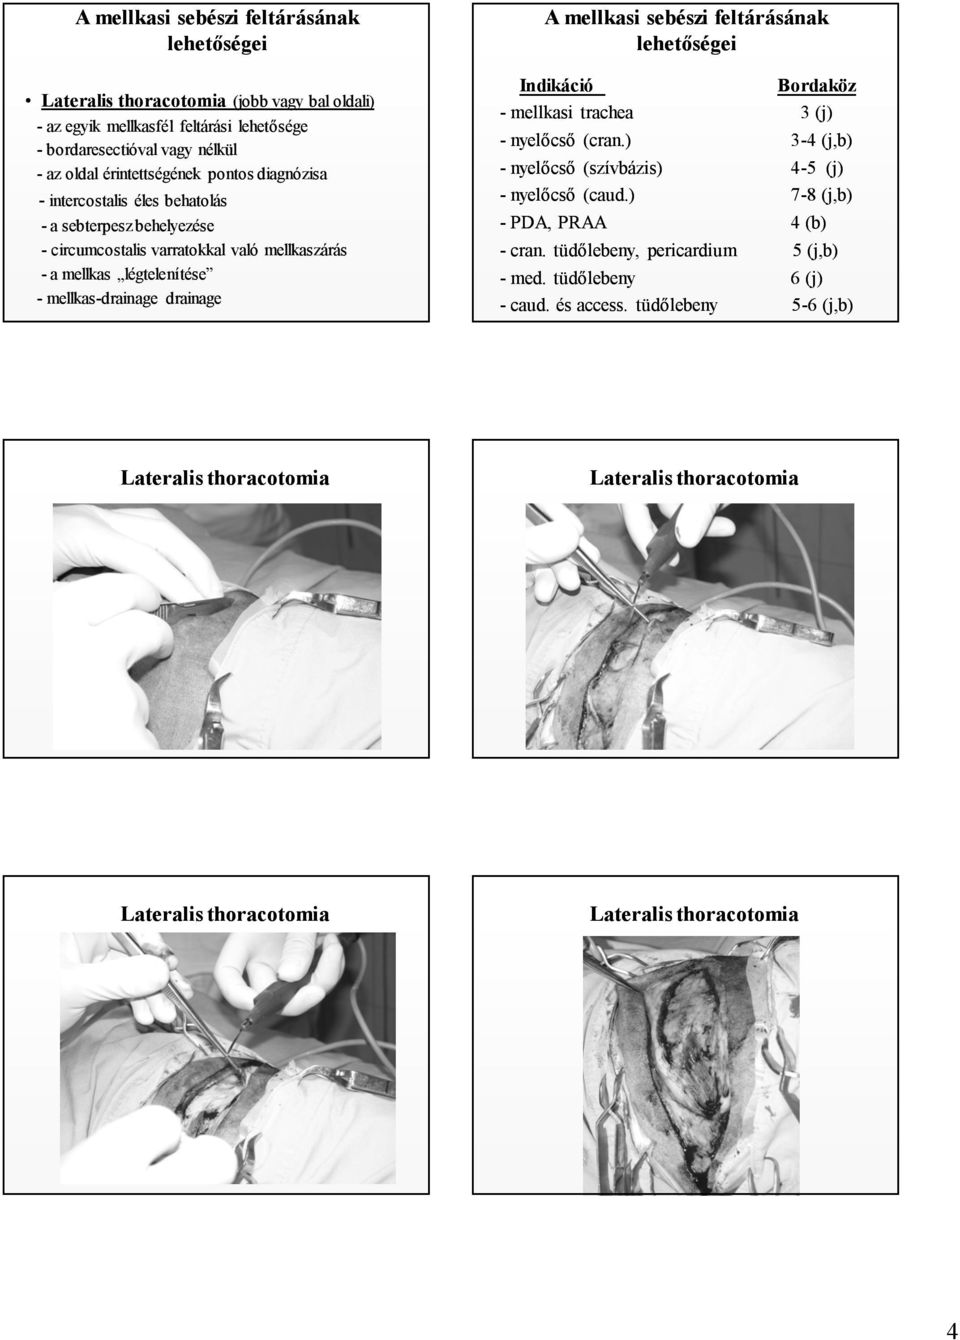 drainage A mellkasi sebészi feltárásának lehetőségei Indikáció Bordaköz - mellkasi trachea 3 (j) - nyelőcső (cran.) 3-4 (j,b) - nyelőcső (szívbázis) 4-5 (j) - nyelőcső (caud.